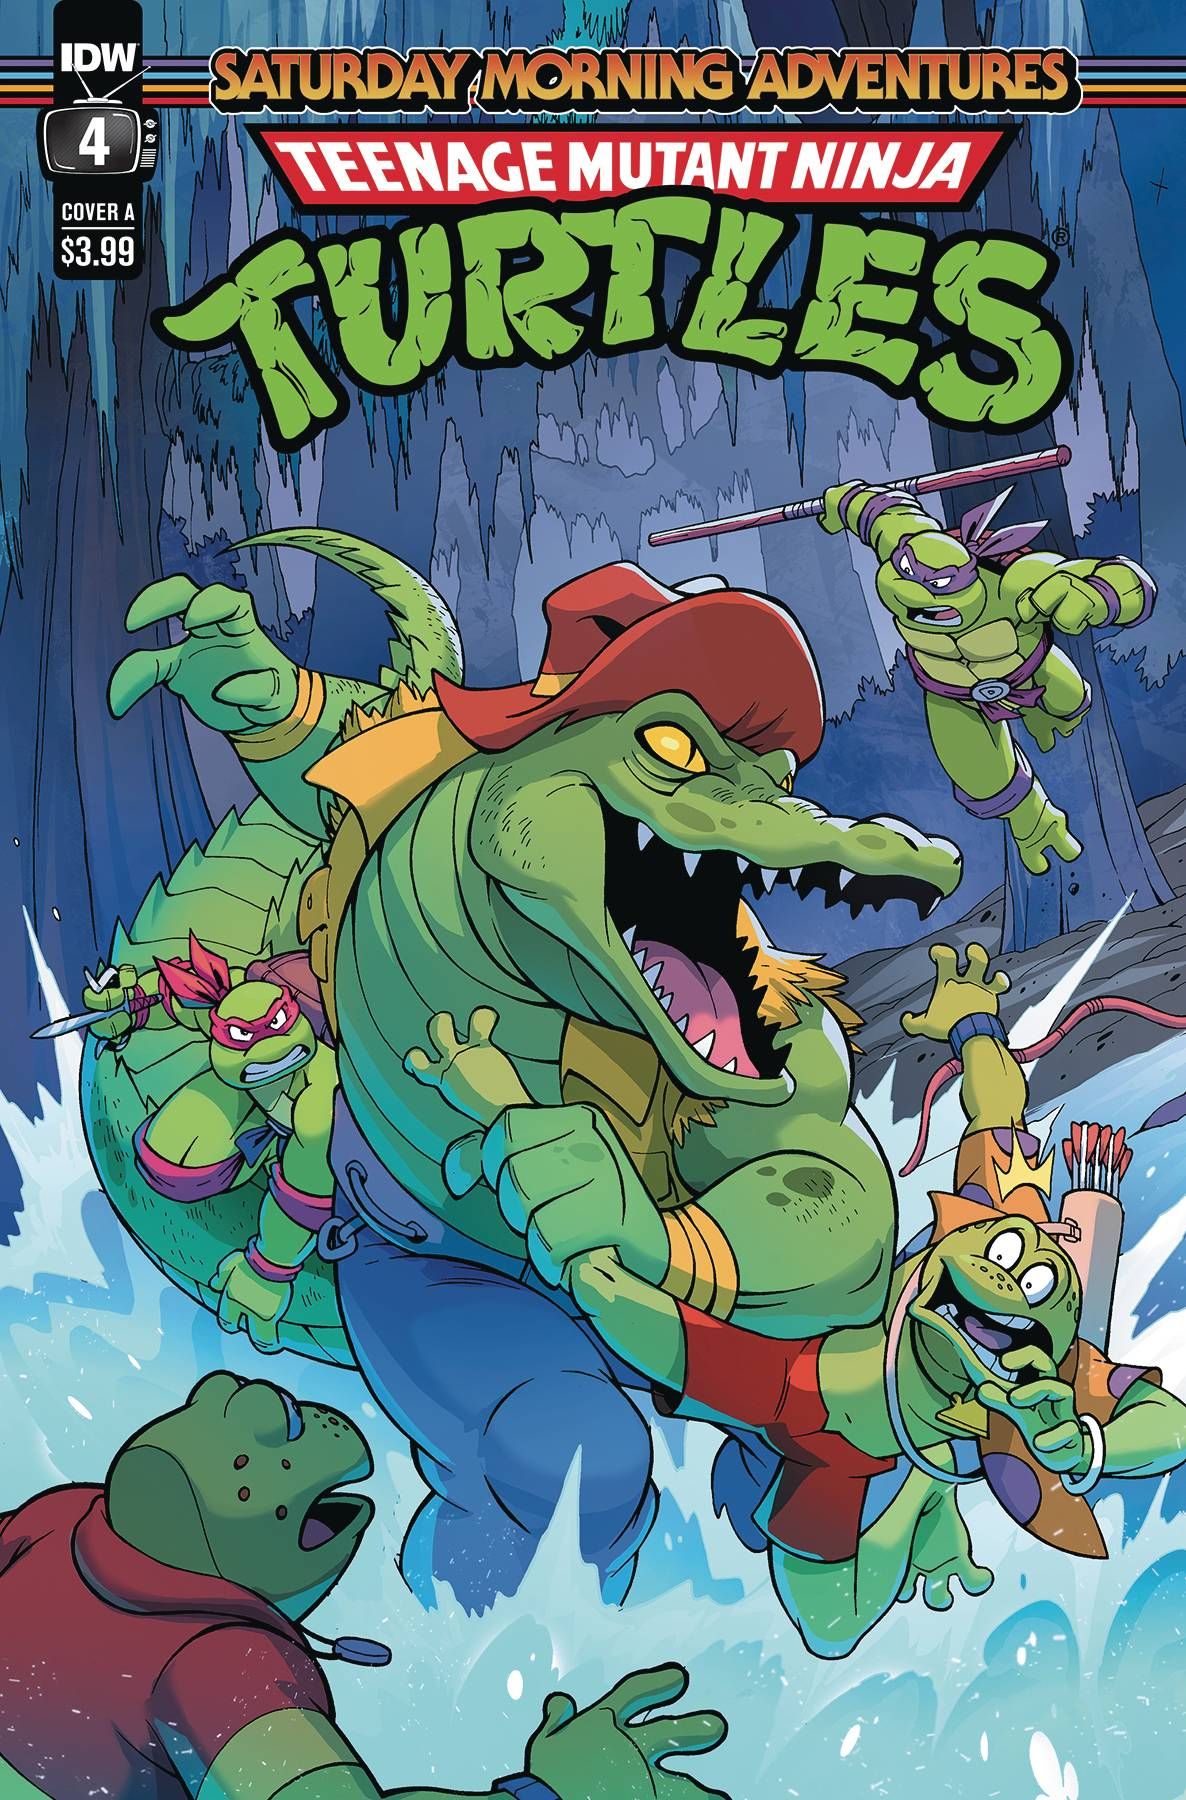 Teenage Mutant Ninja Turtles: Saturday Morning Adventures #4 Comic